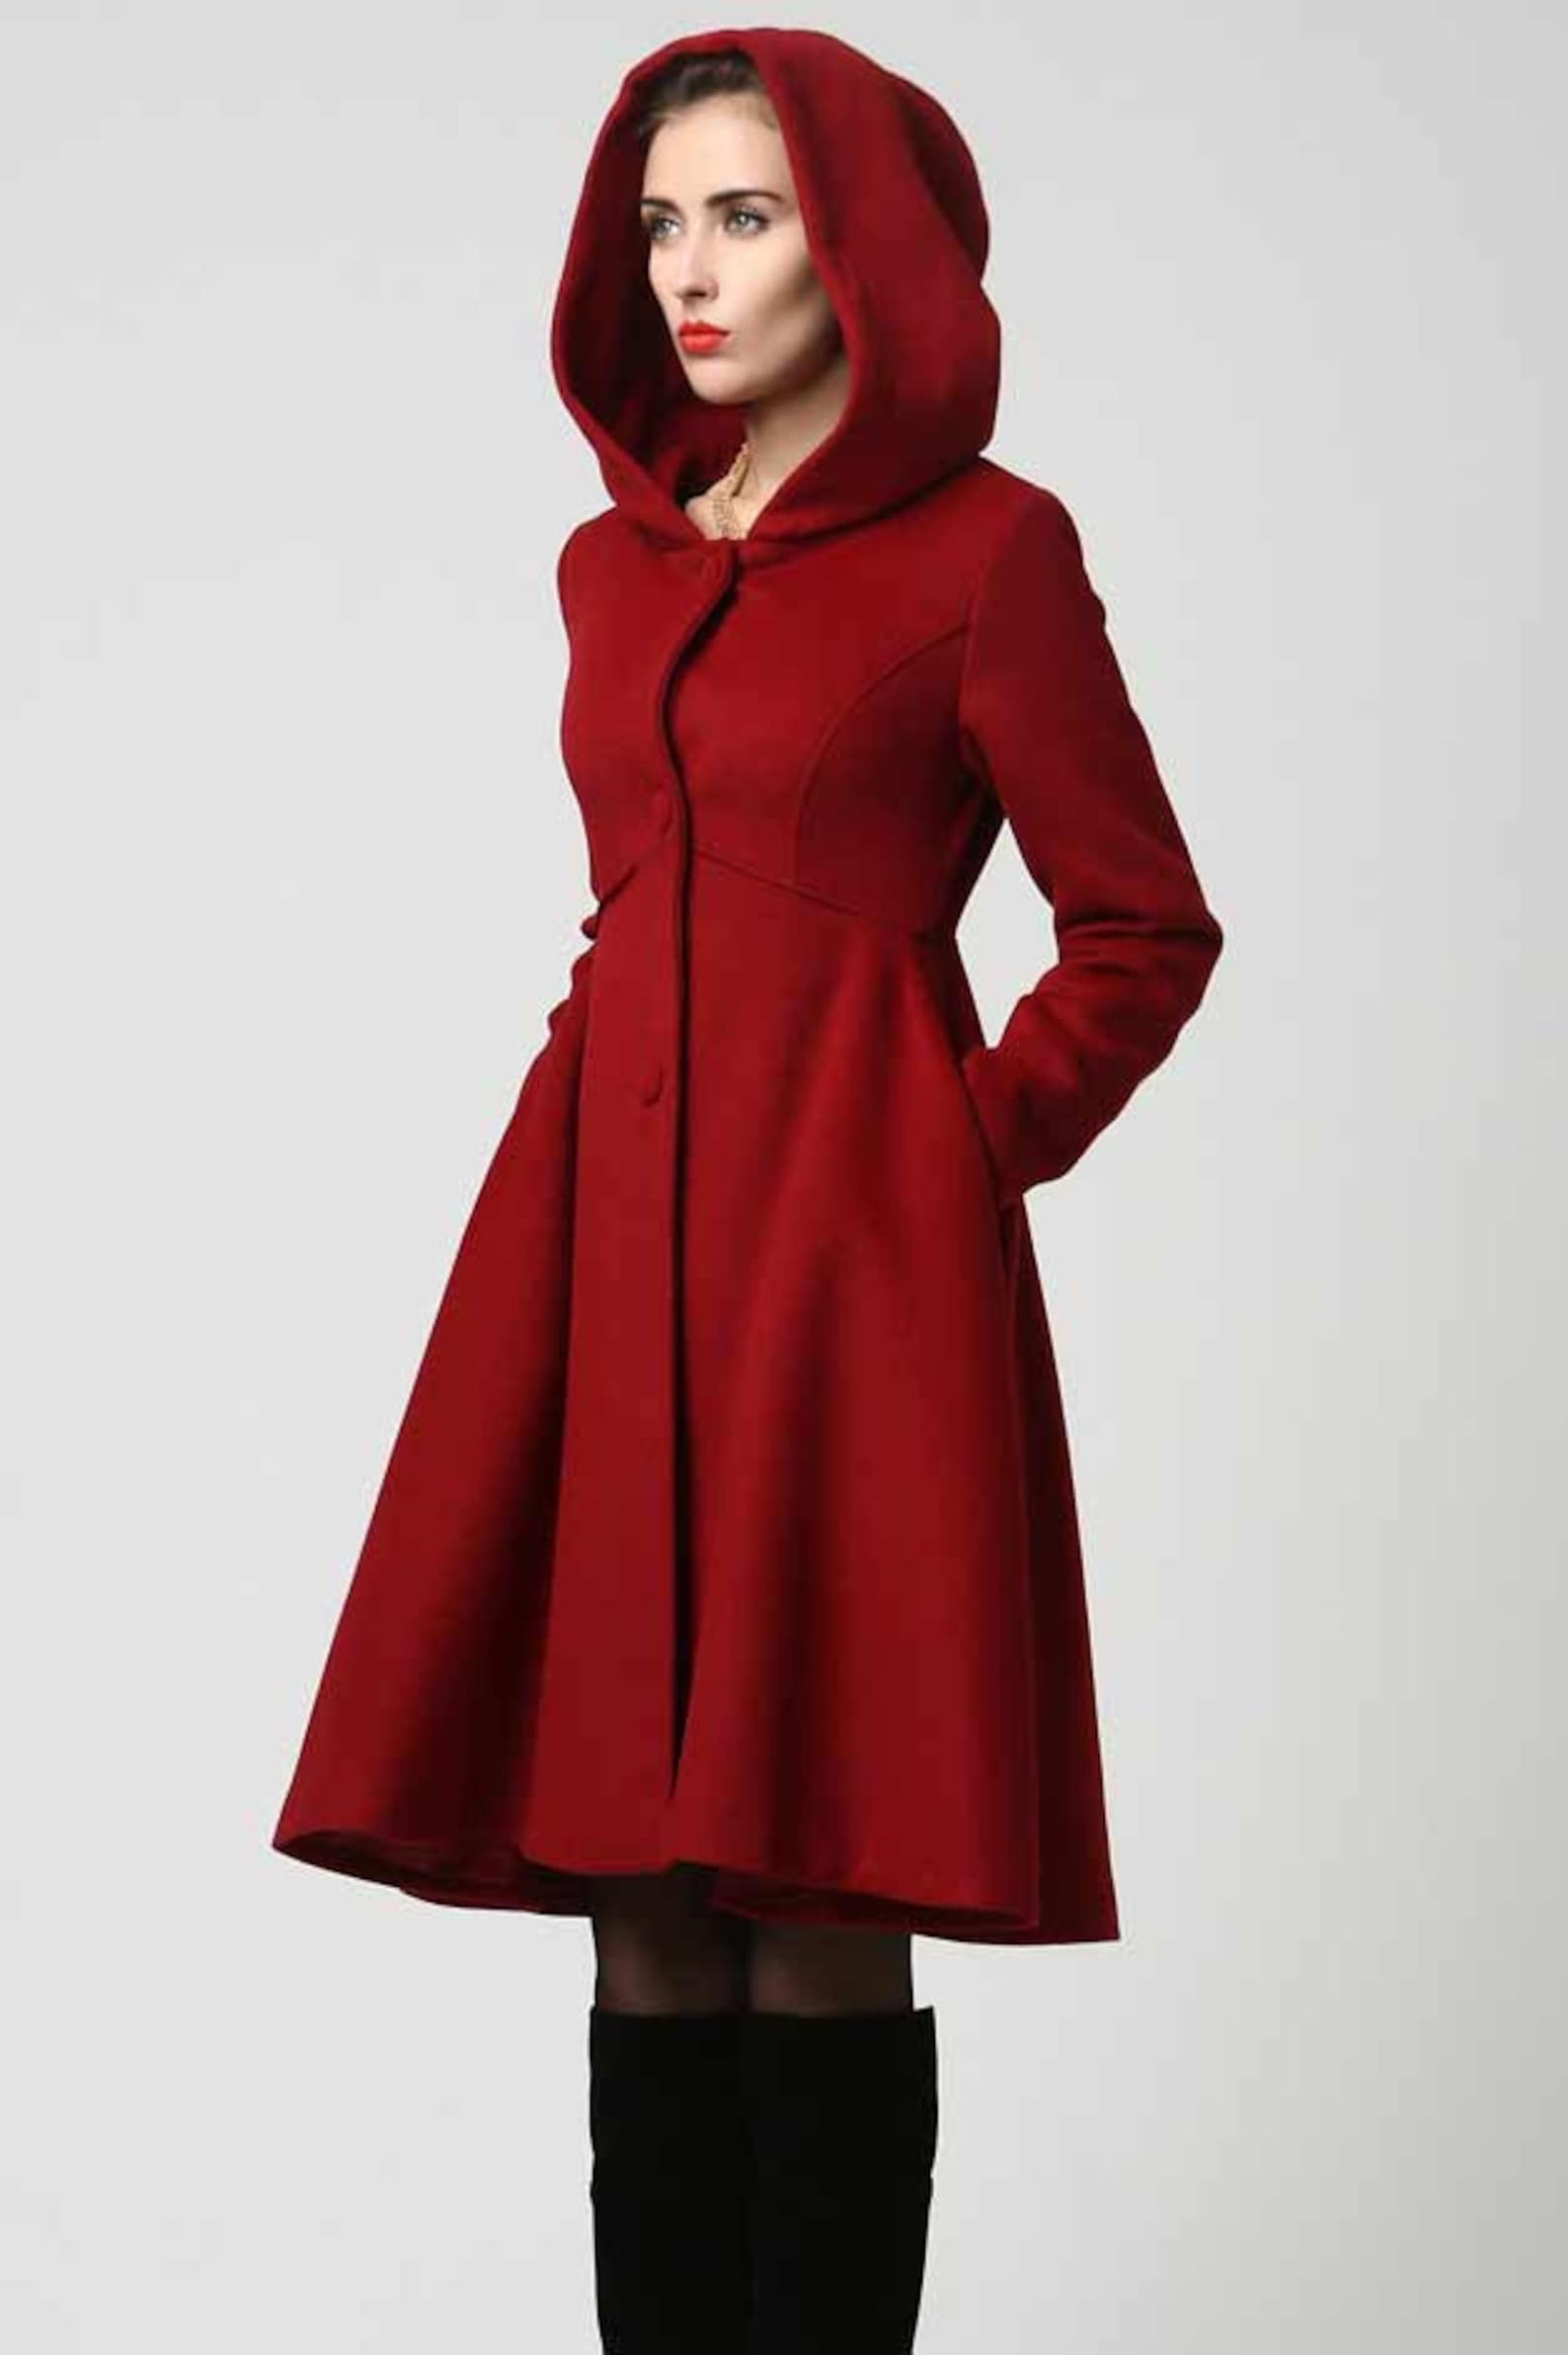 Women's Winter Single Breasted Wool Coat Red Swing Hooded - Etsy